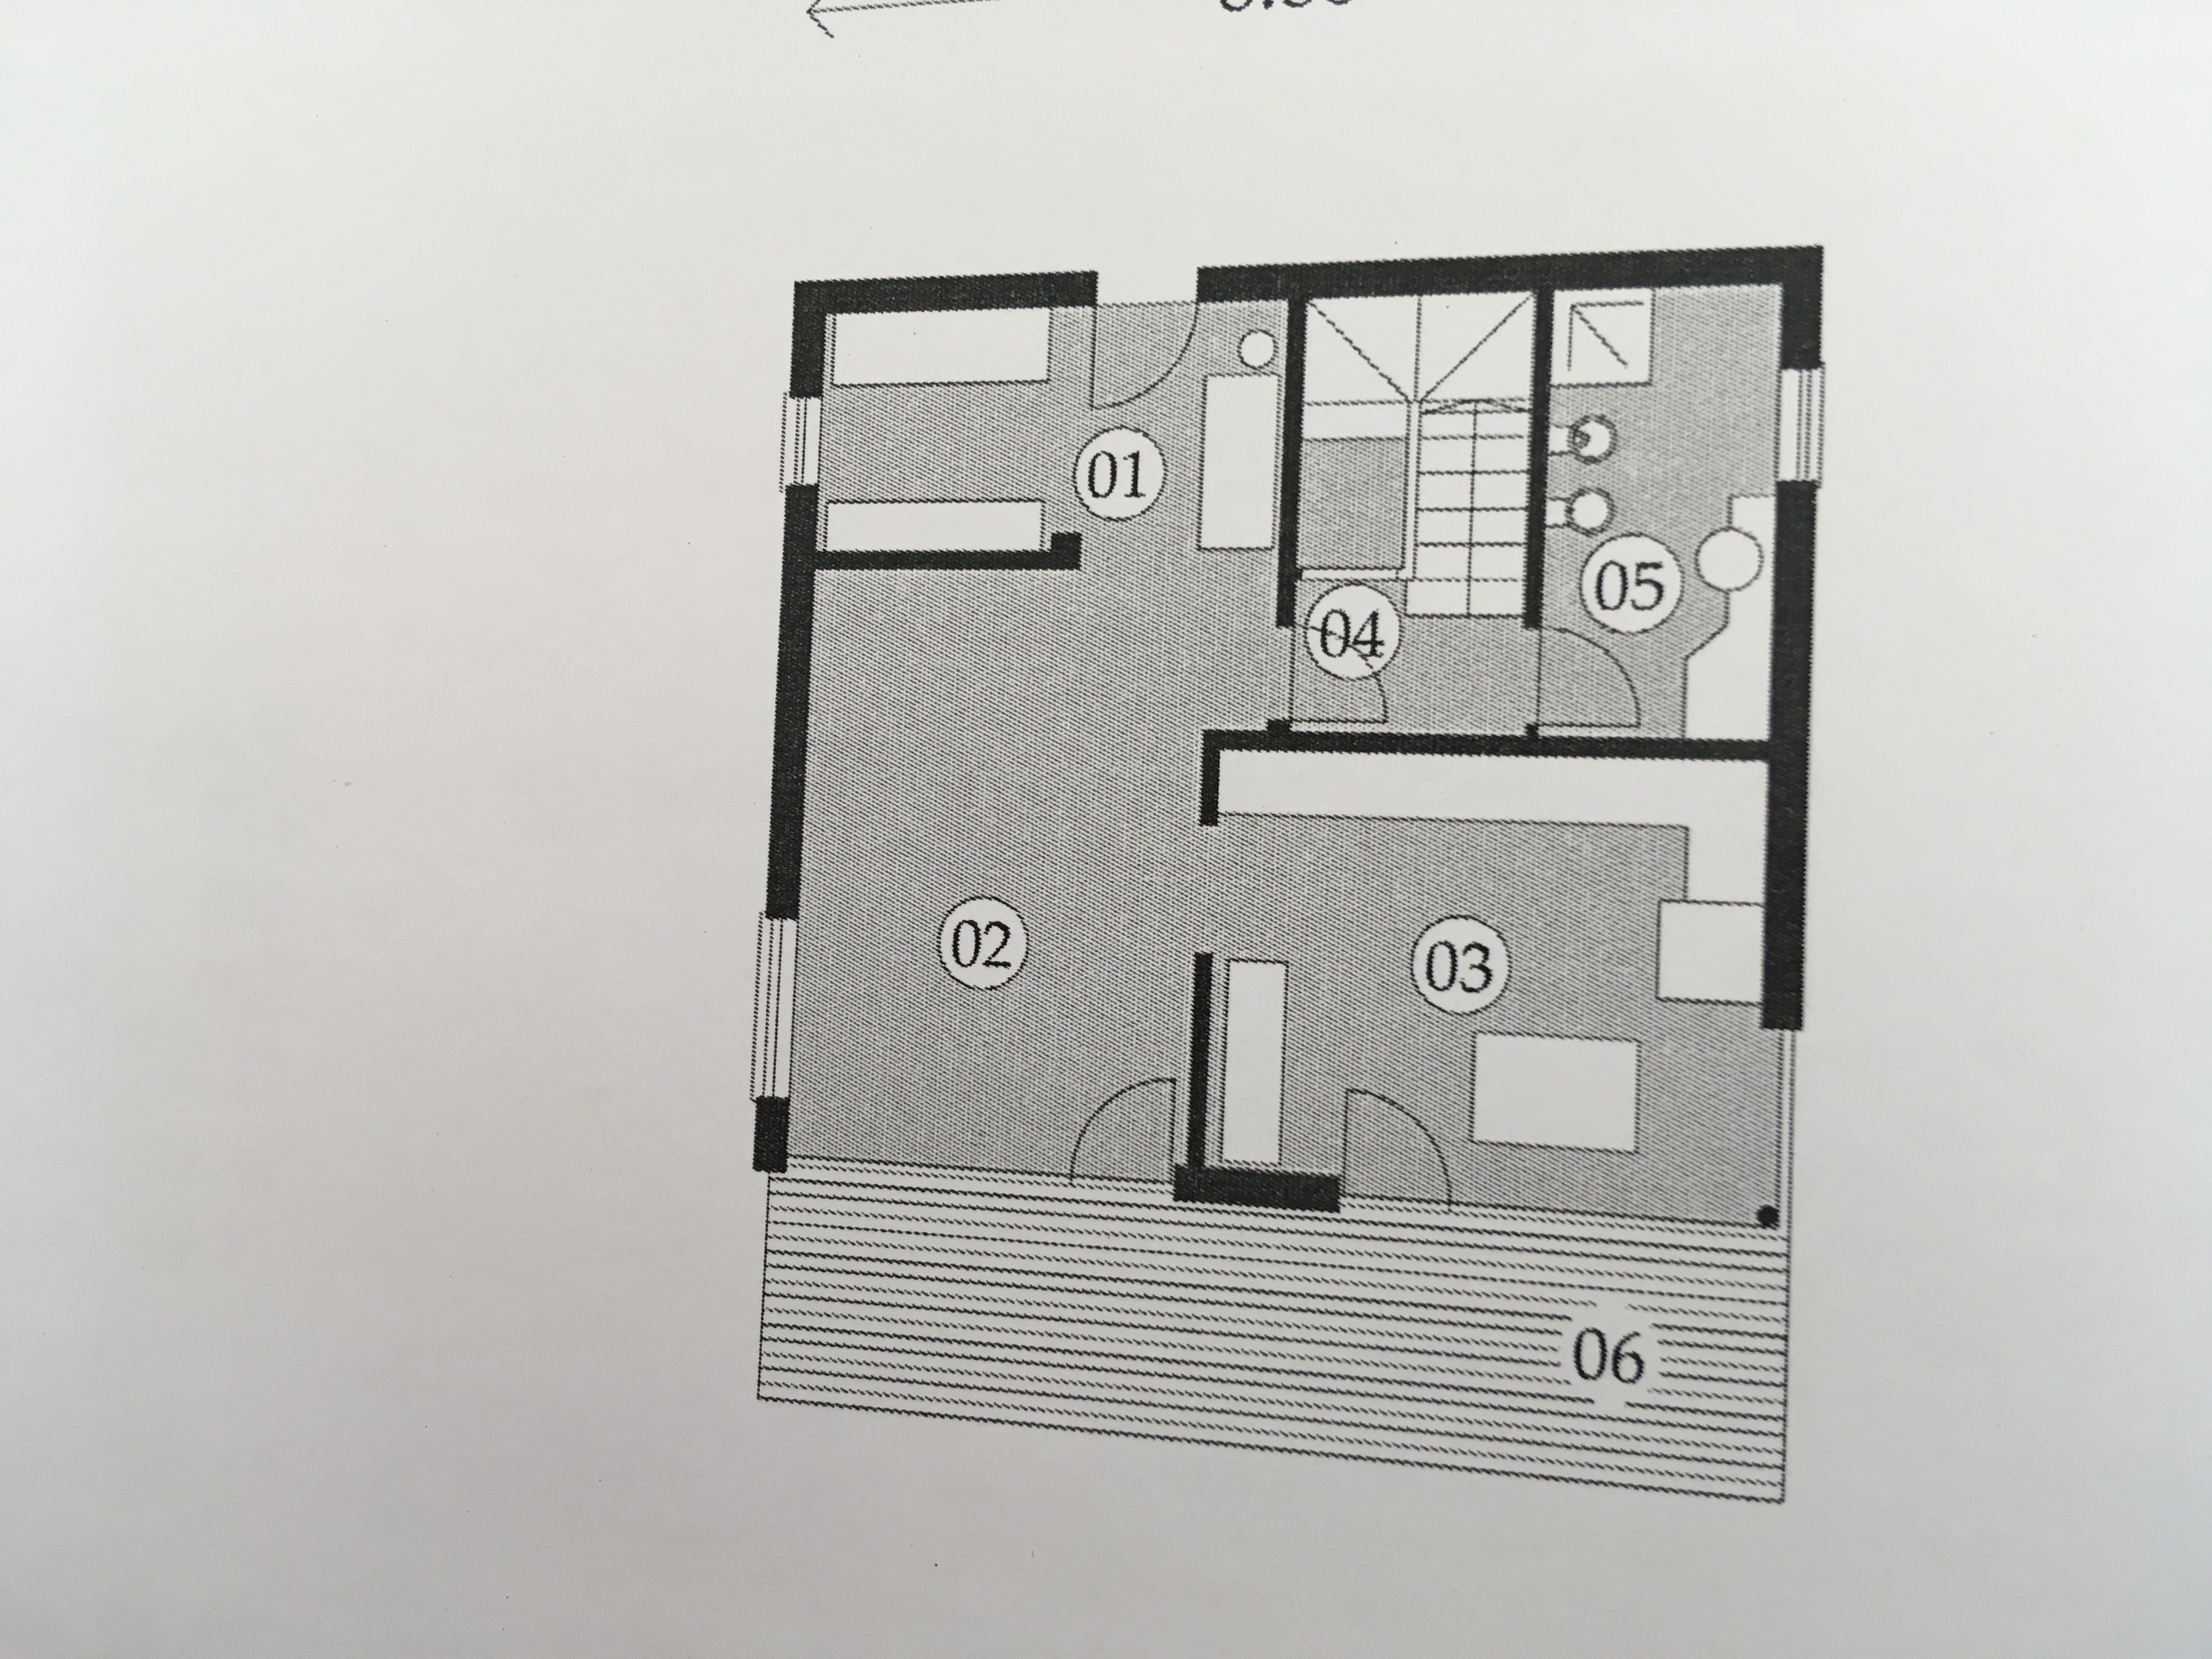 Planimetria della costruzione Casa in Legno modello Casa con facciate in Pietra  a due piani  di RIKO-HISE srl - Arch. Daniele Bonzi